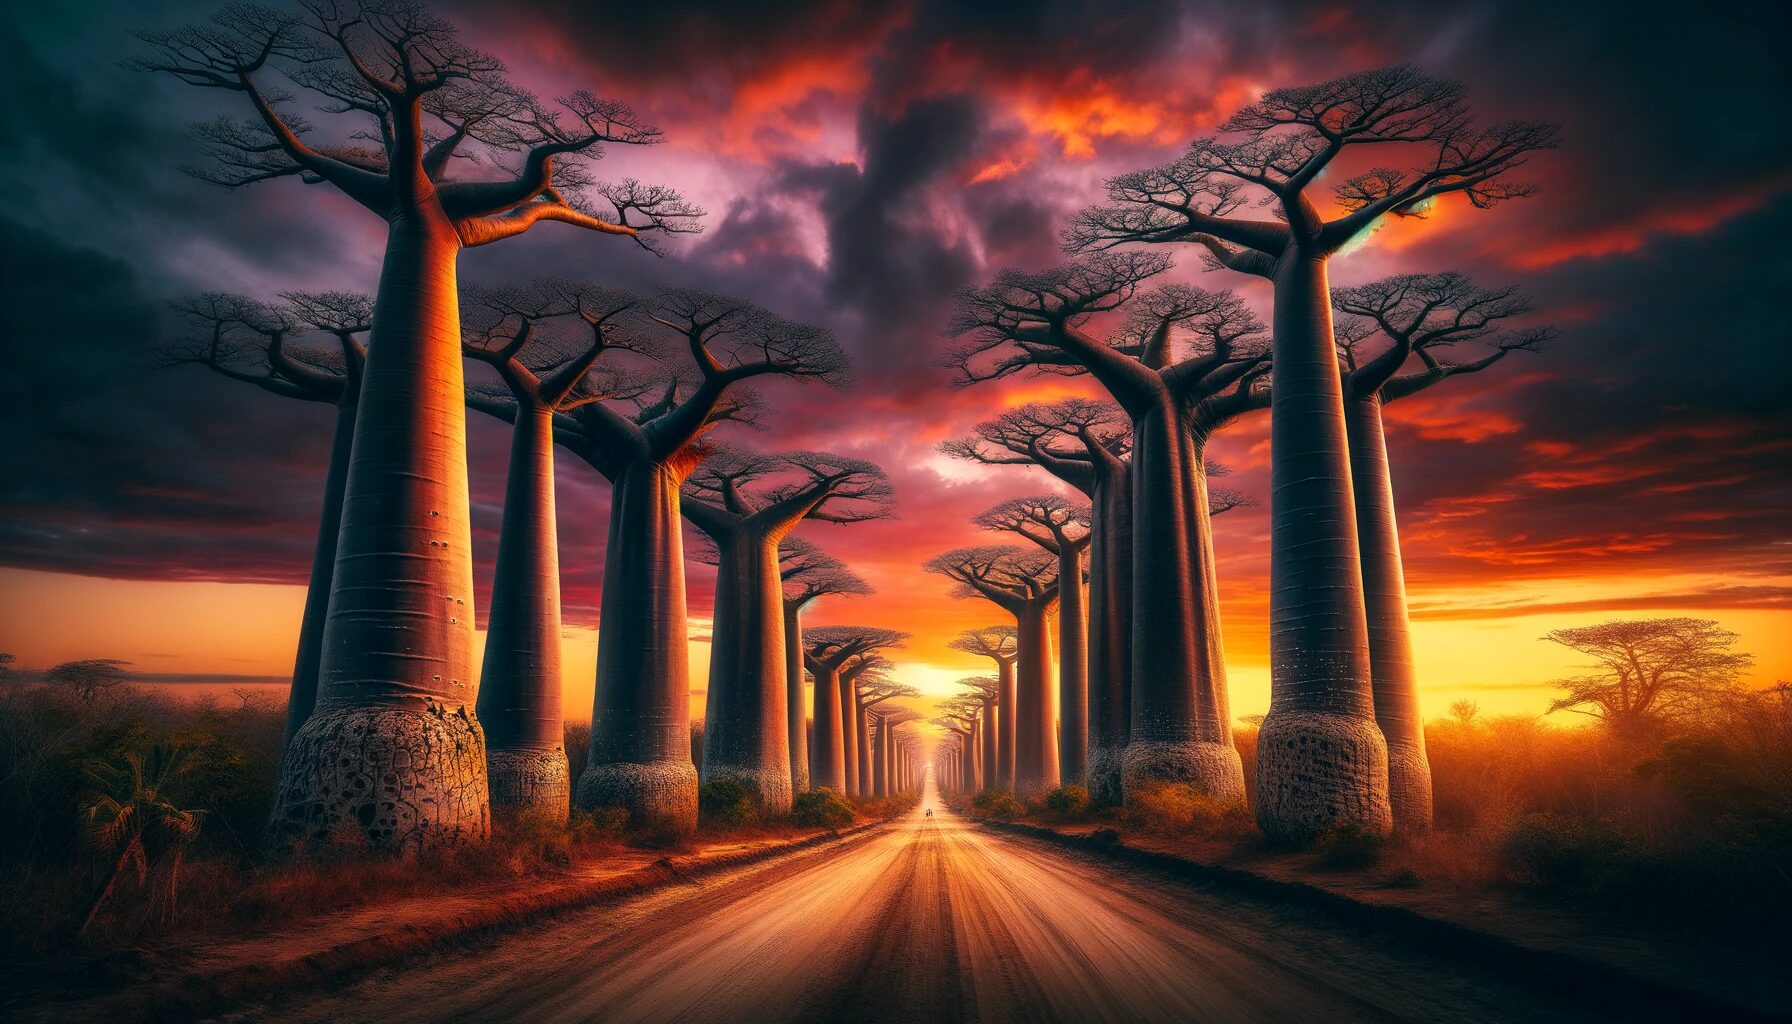 マダガスカル・夕焼けに映えるバオバブ並木 - 無料写真素材